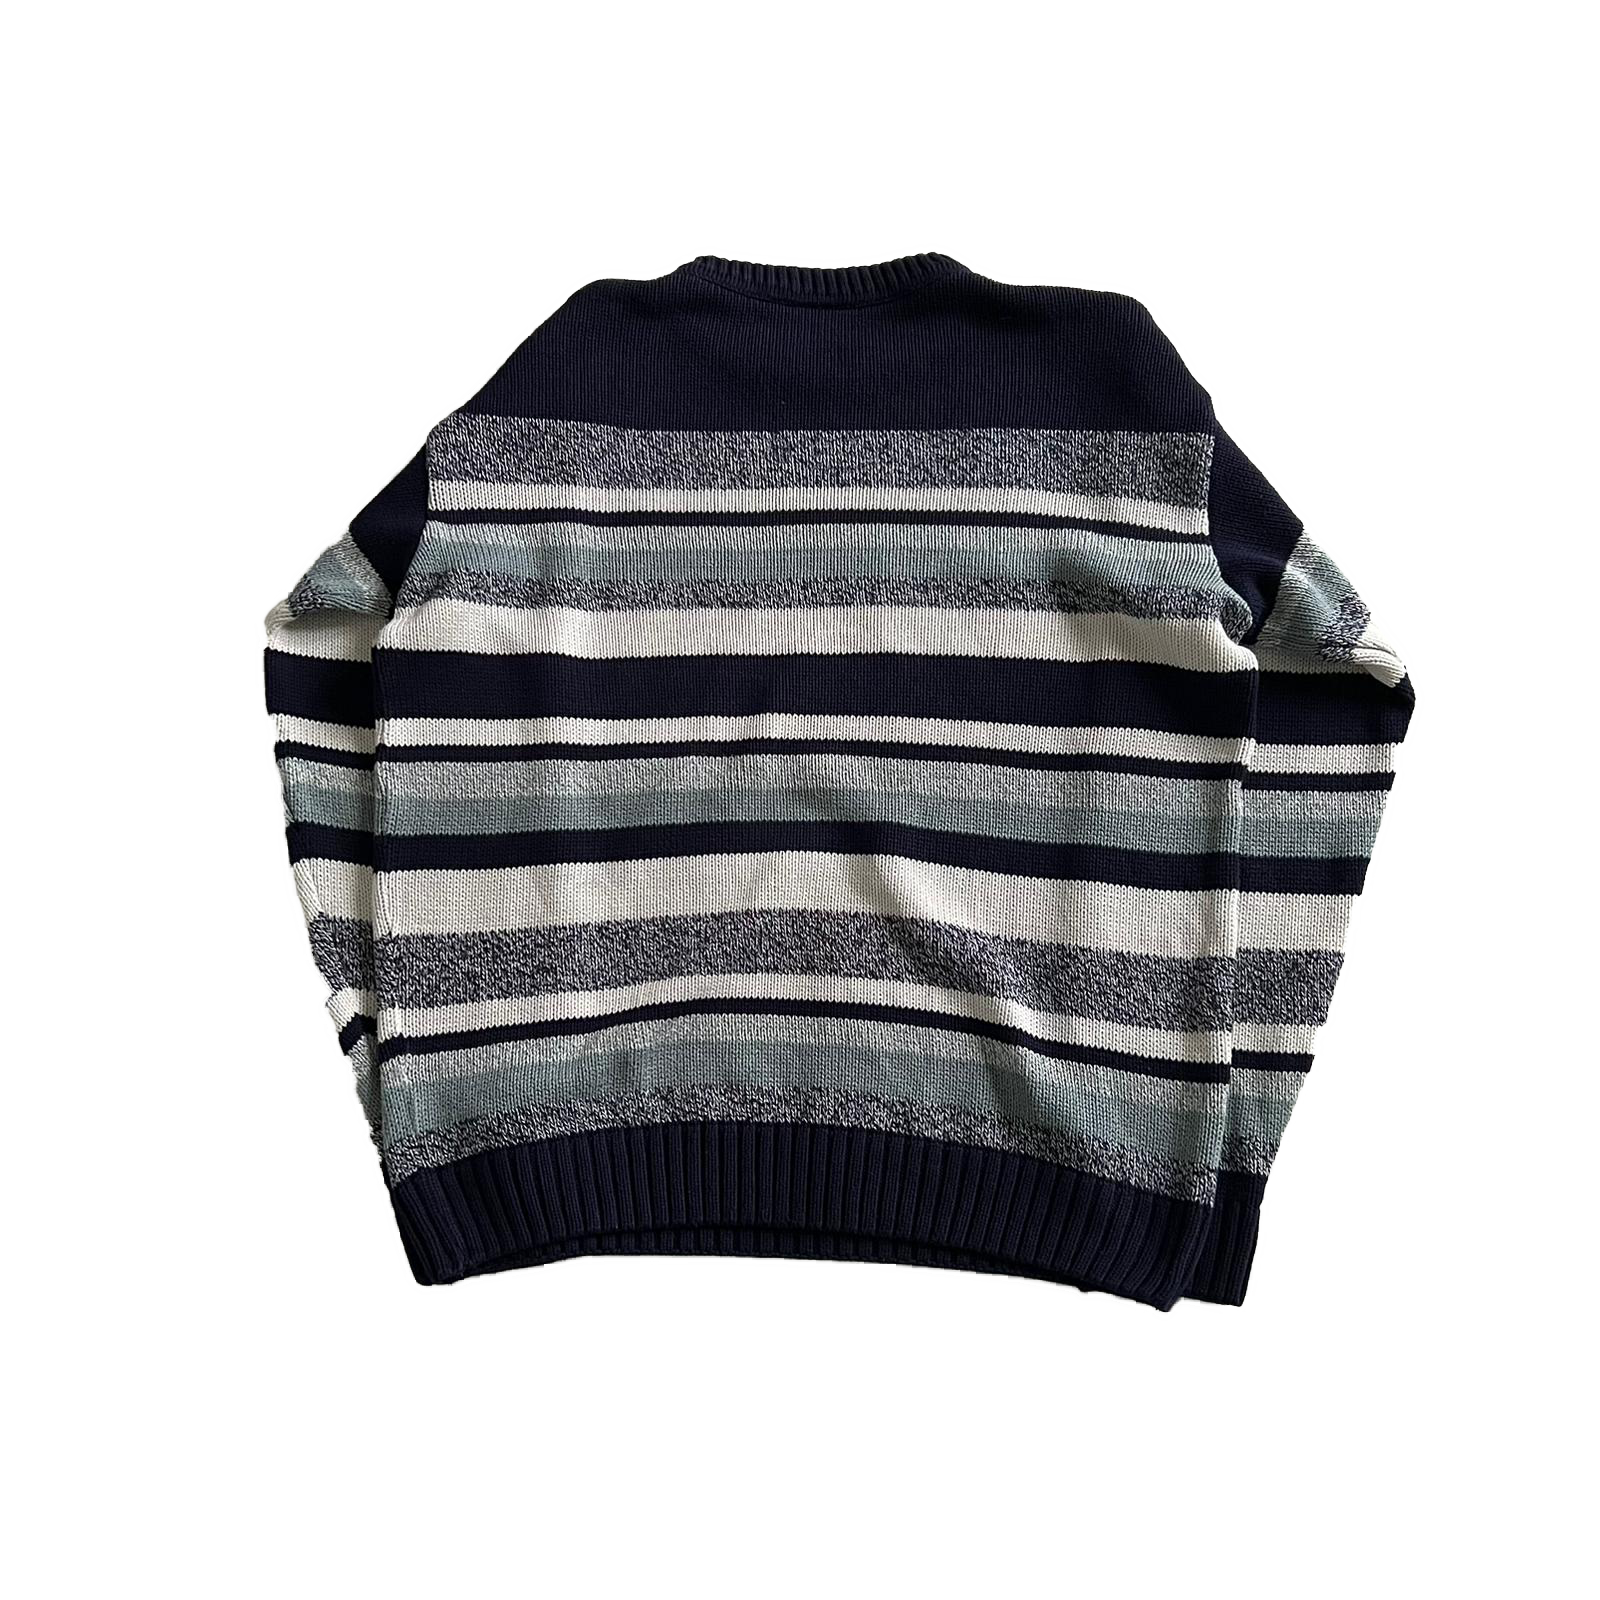 00's Lacoste knit sweatshirt